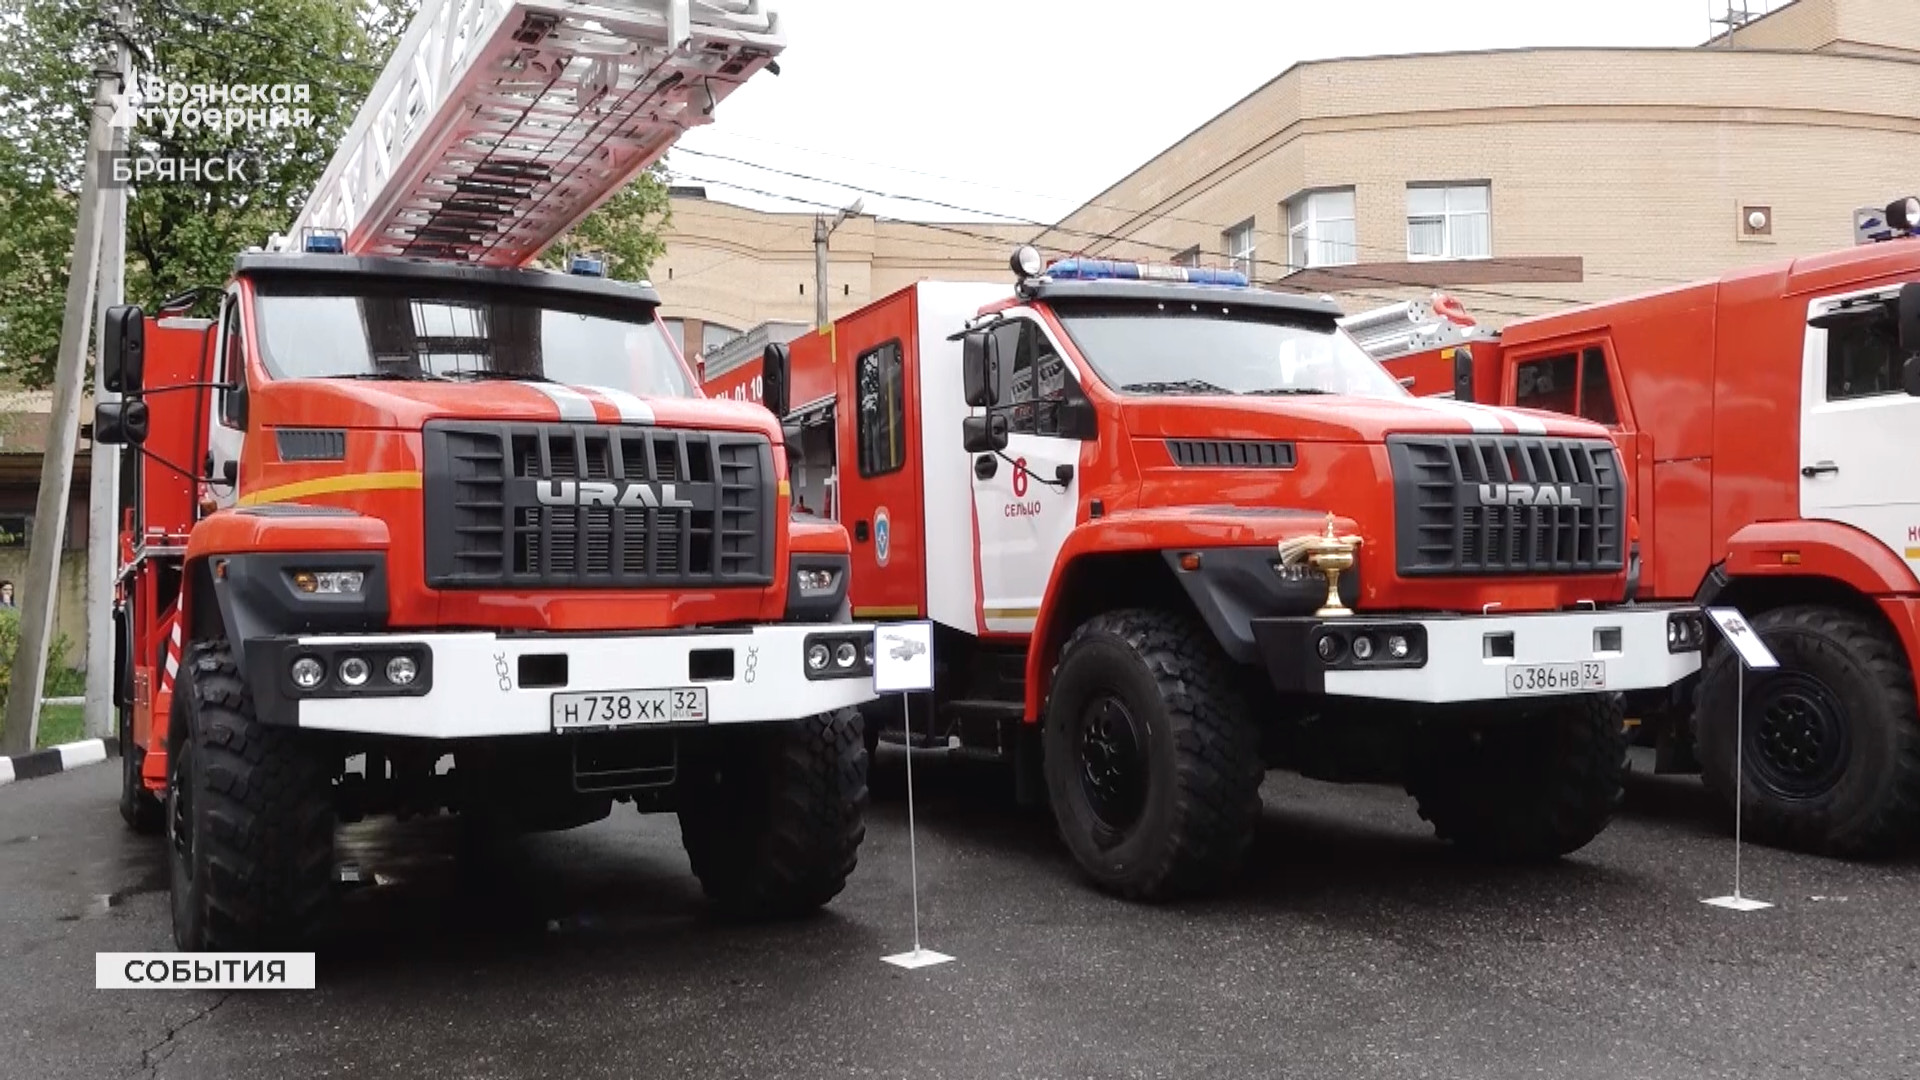 Брянские спасатели получили в День пожарной охраны новую технику и награды